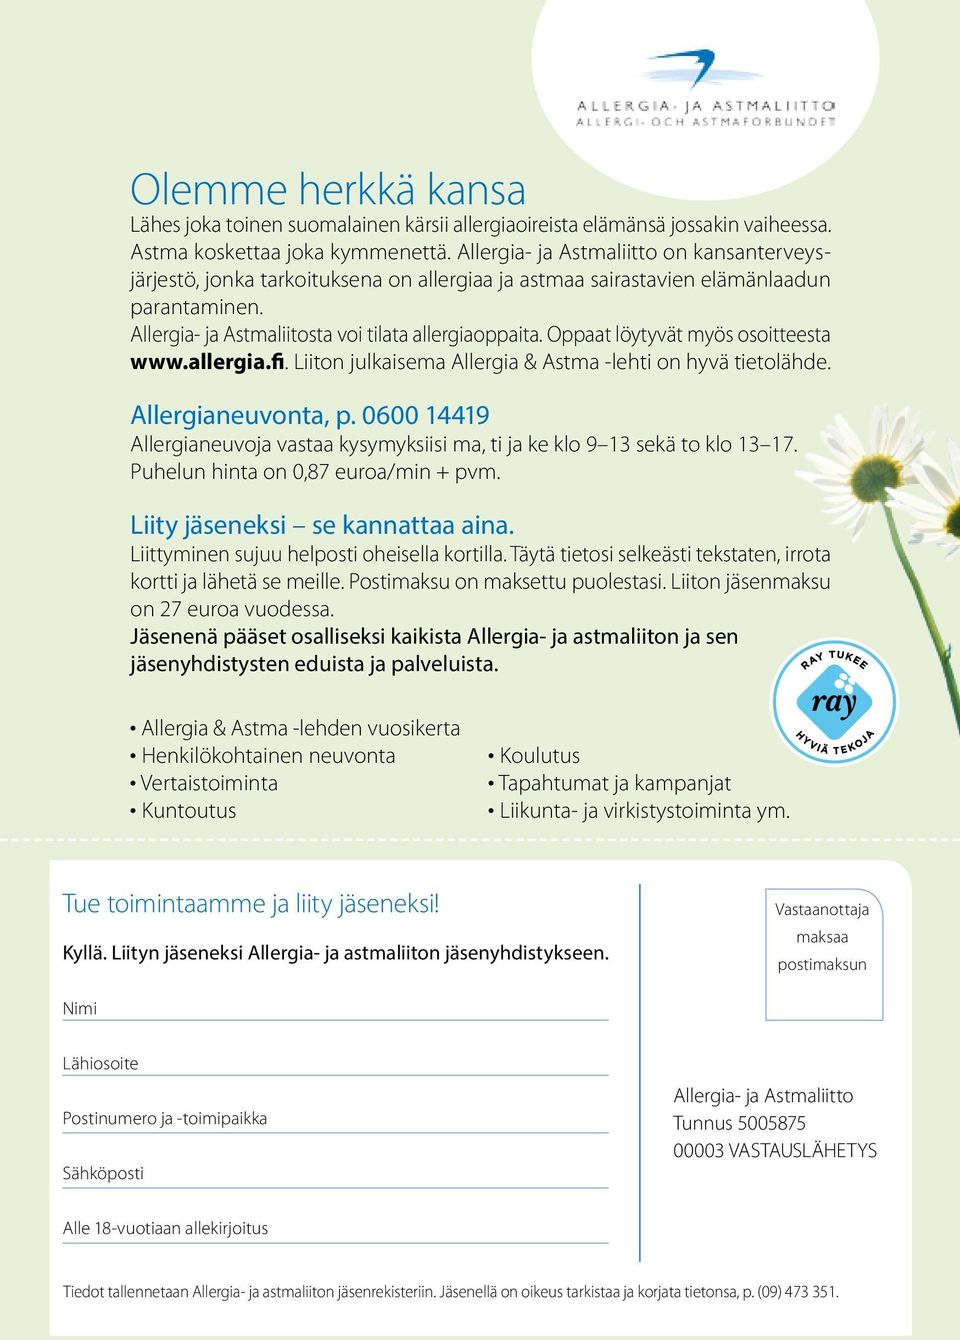 Oppaat löytyvät myös osoitteesta www.allergia.fi. Liiton julkaisema Allergia & Astma -lehti on hyvä tietolähde. Allergianeuvonta, p.